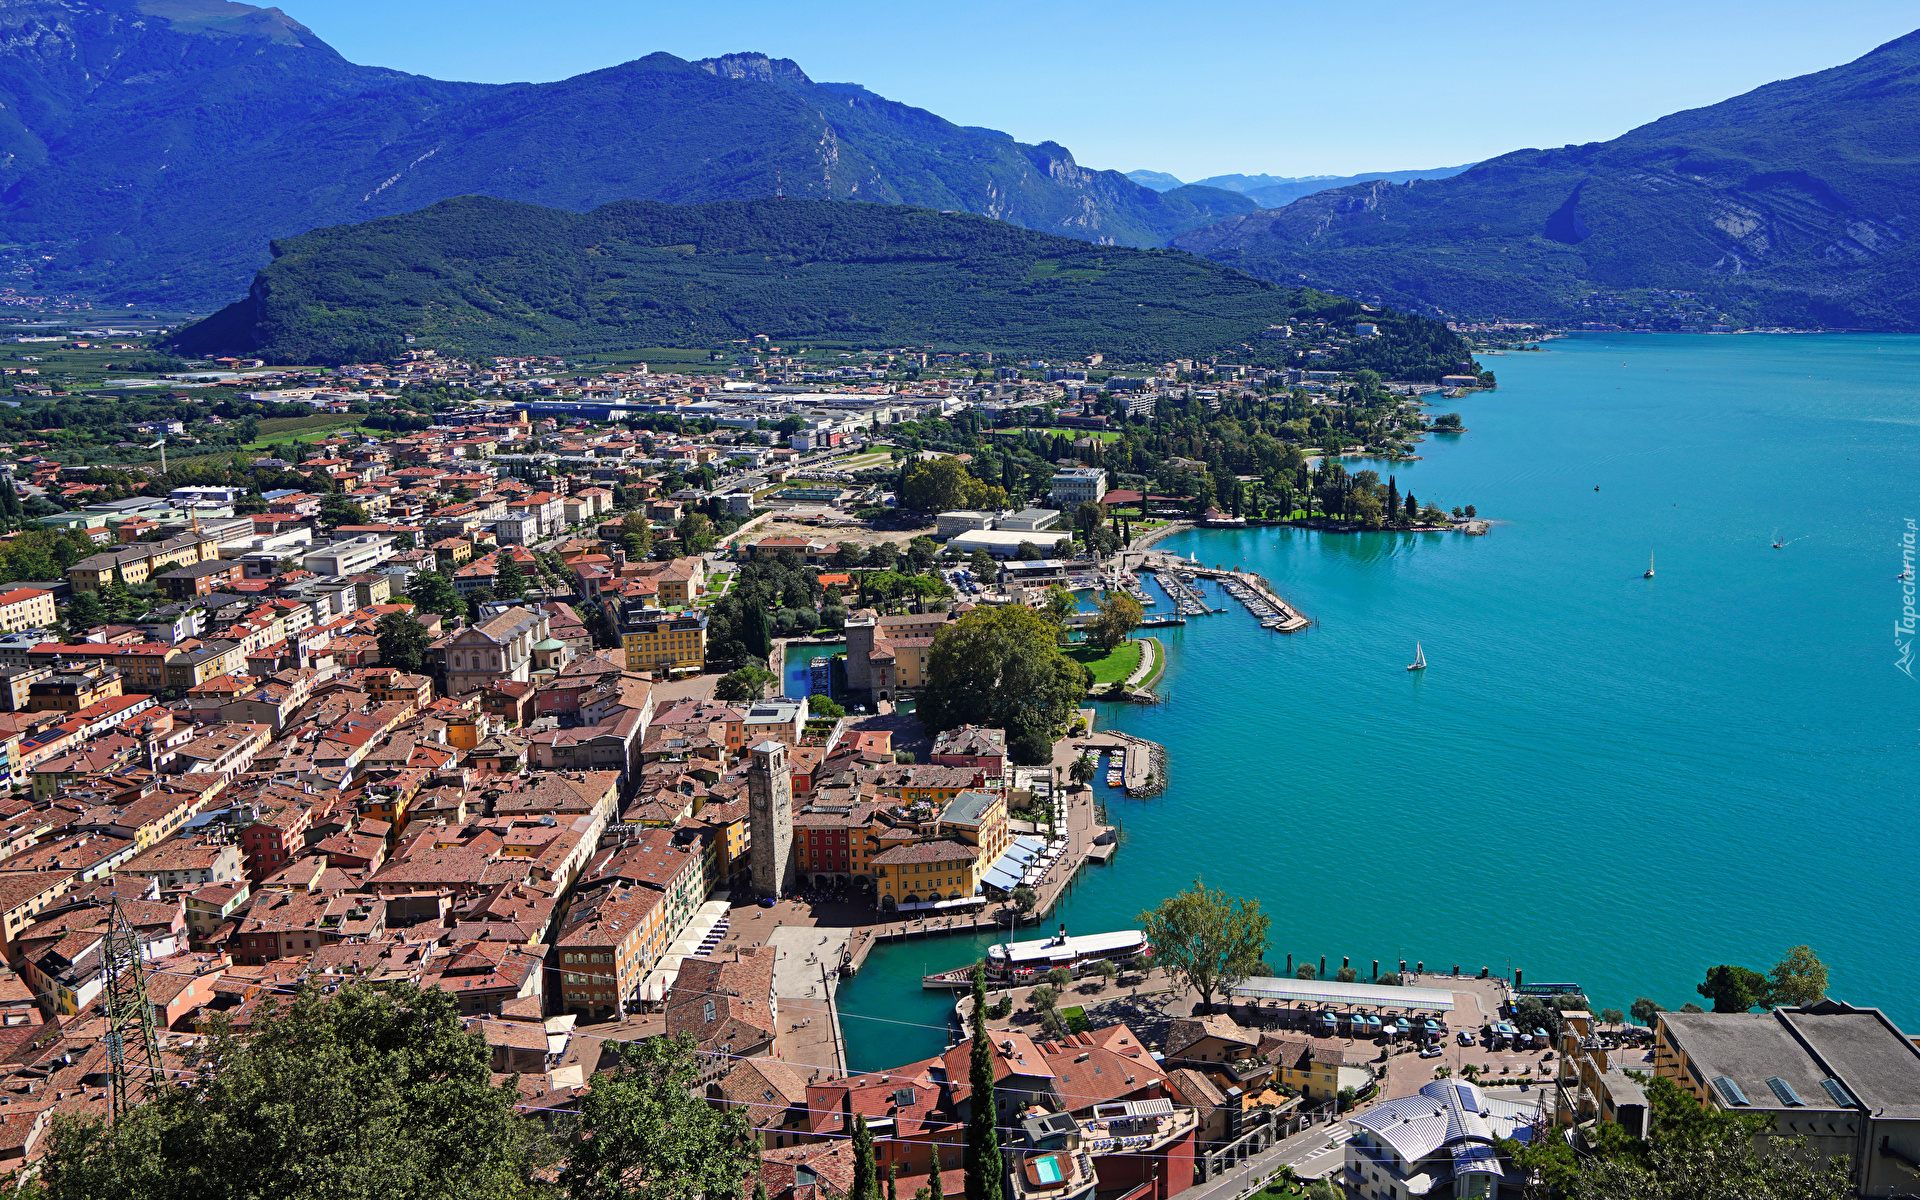 Włochy, Góry, Alpy, Las, Drzewa, Miasto, Riva del Garda, Domy, Jezioro, Lake Garda